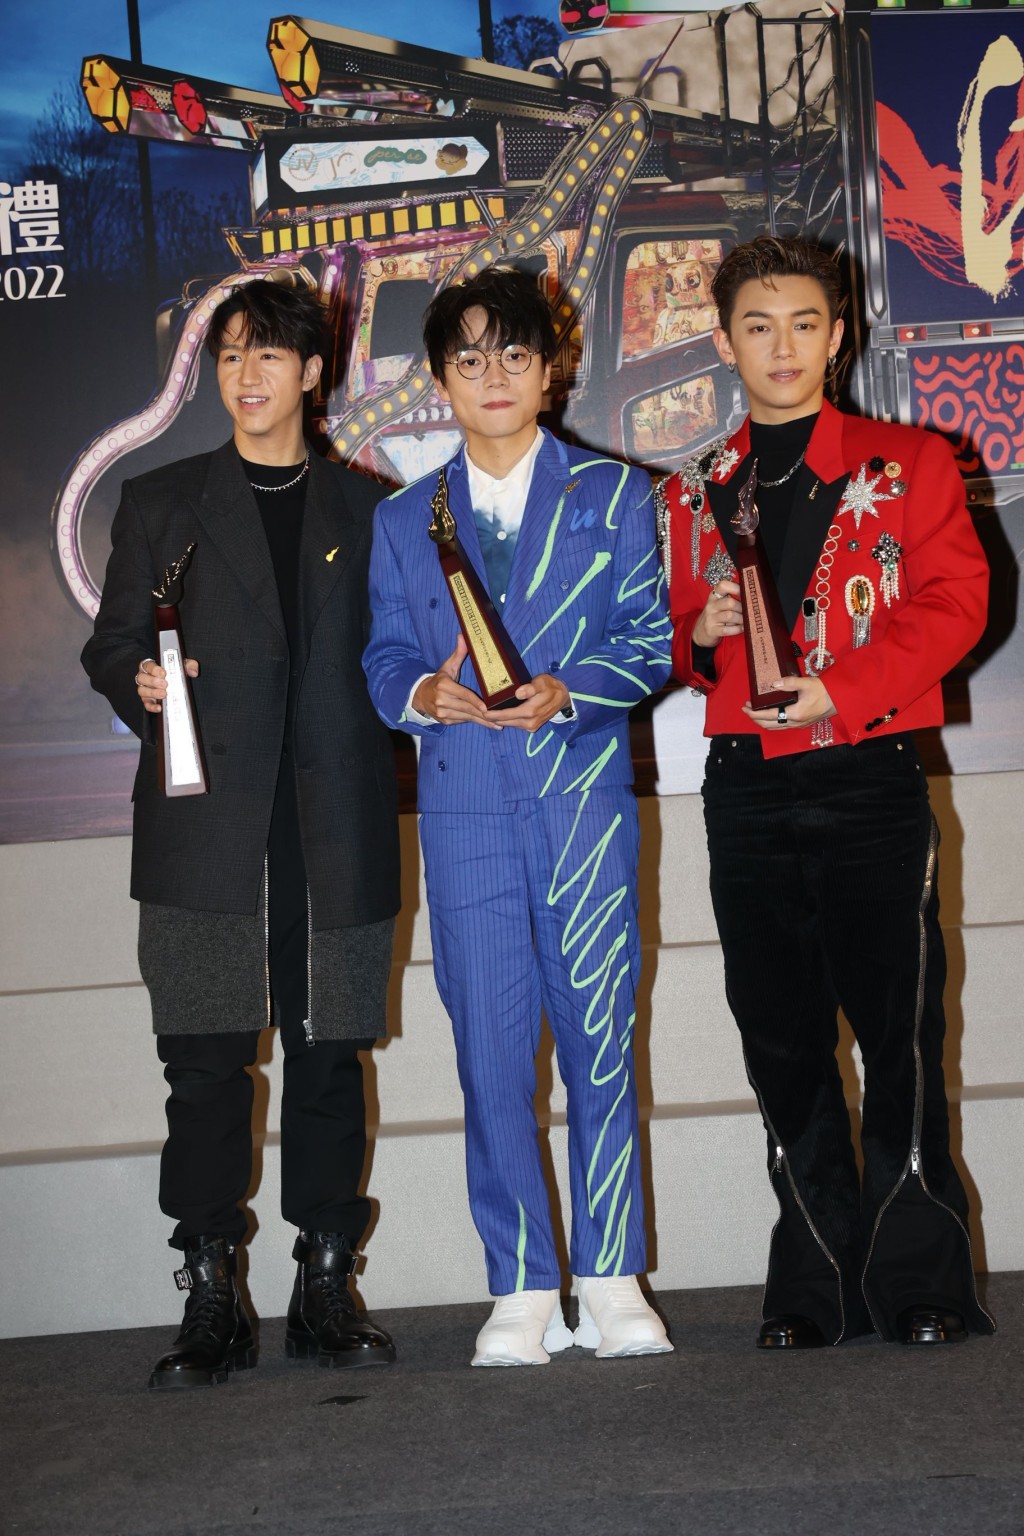 冯允谦、林家谦及张天赋(MC)今年初分膺商台《叱咤乐坛流行榜颁奖典礼》男歌手银、金及铜奖。。